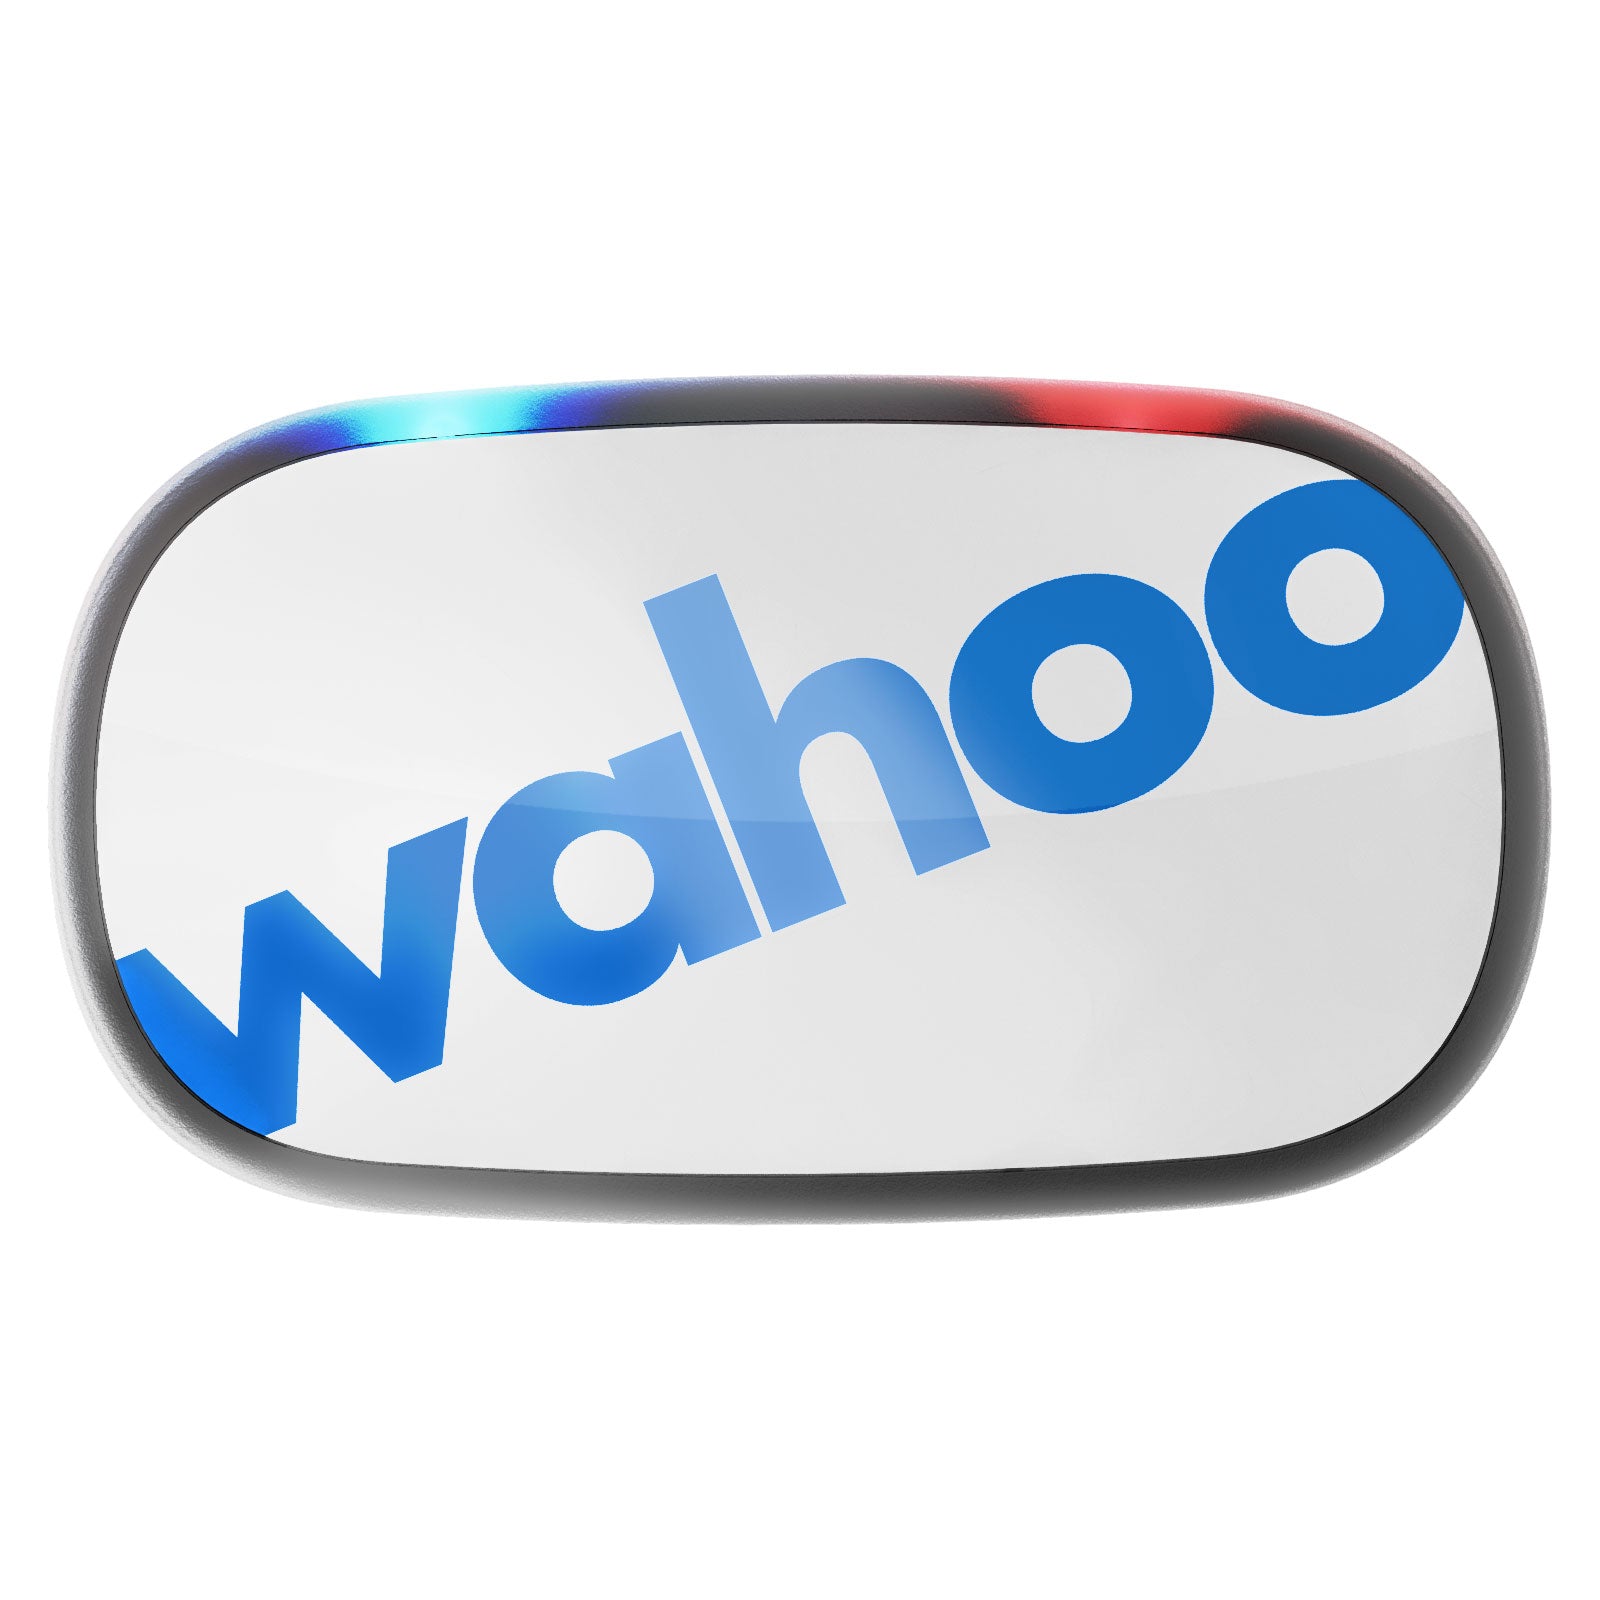 Wahoo Fitness TICKR2 ANT+ Pulsgurt Herzfrequenz - Weiß